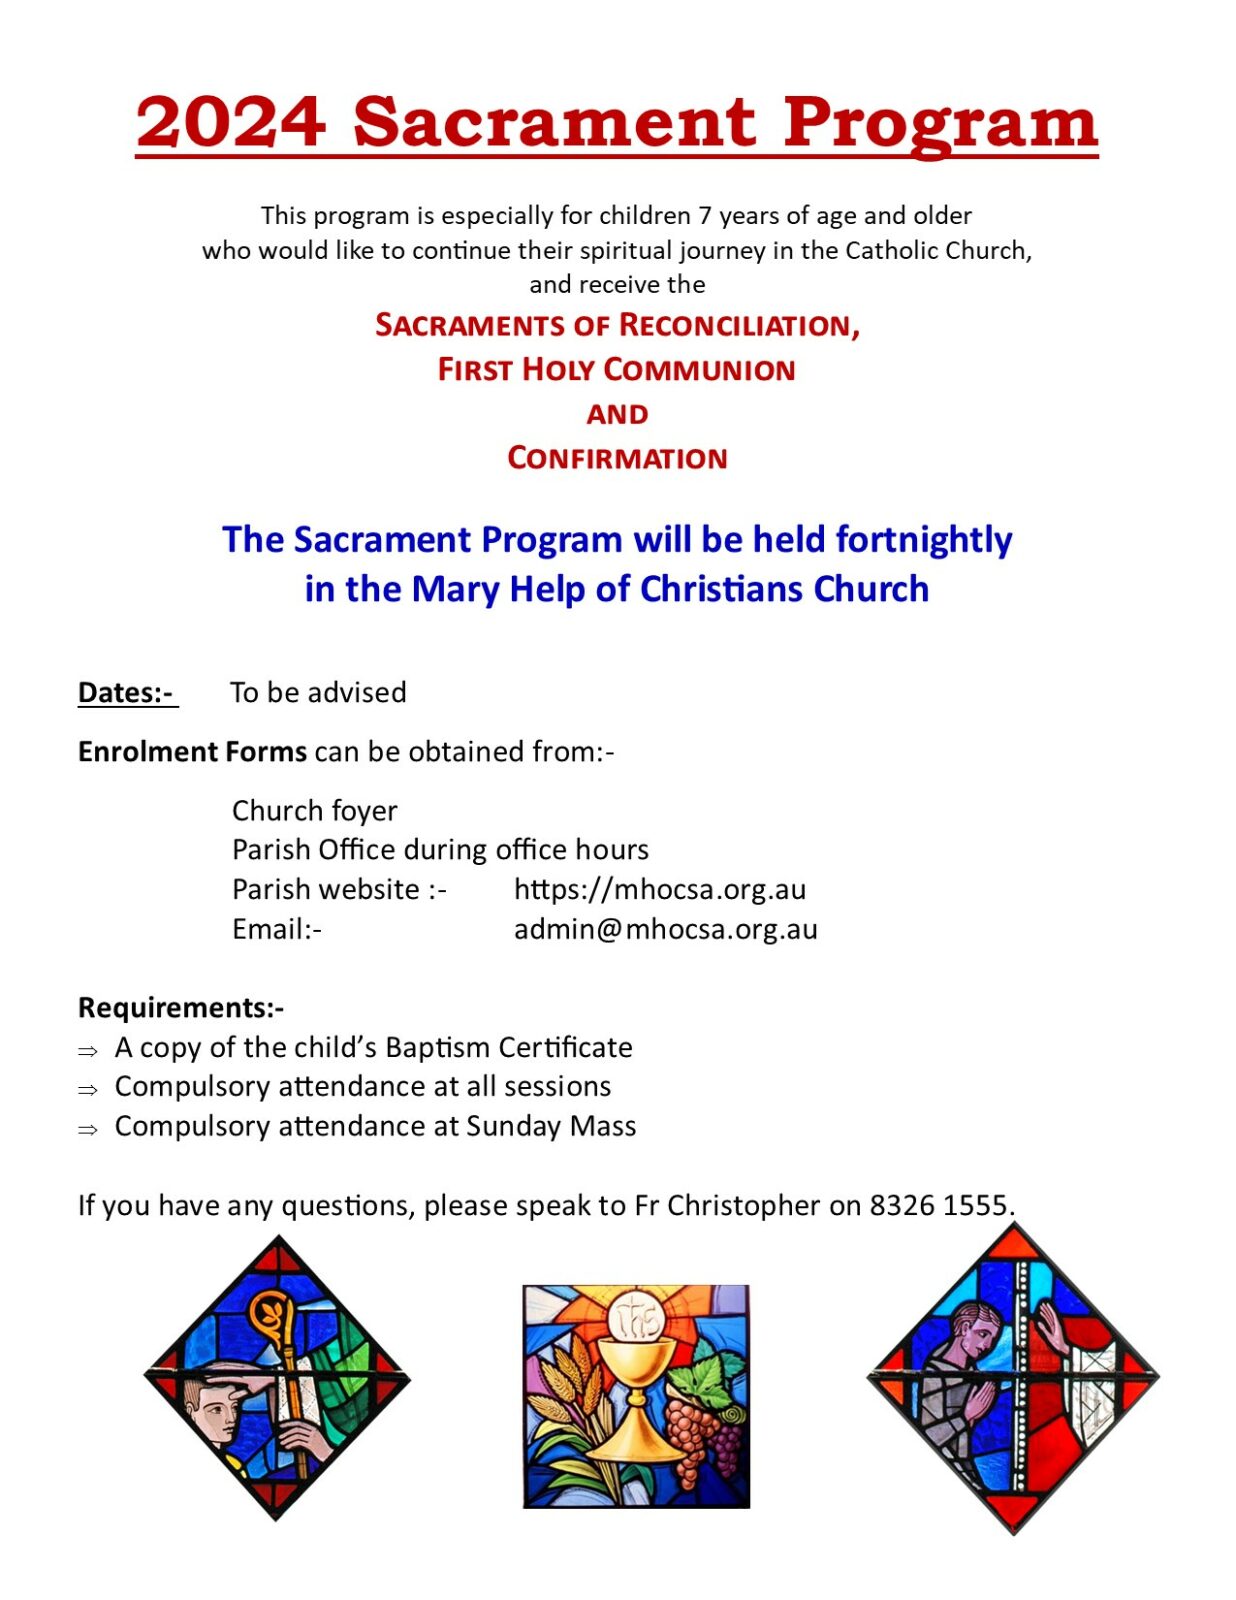 2024 Sacrament Program Flyer